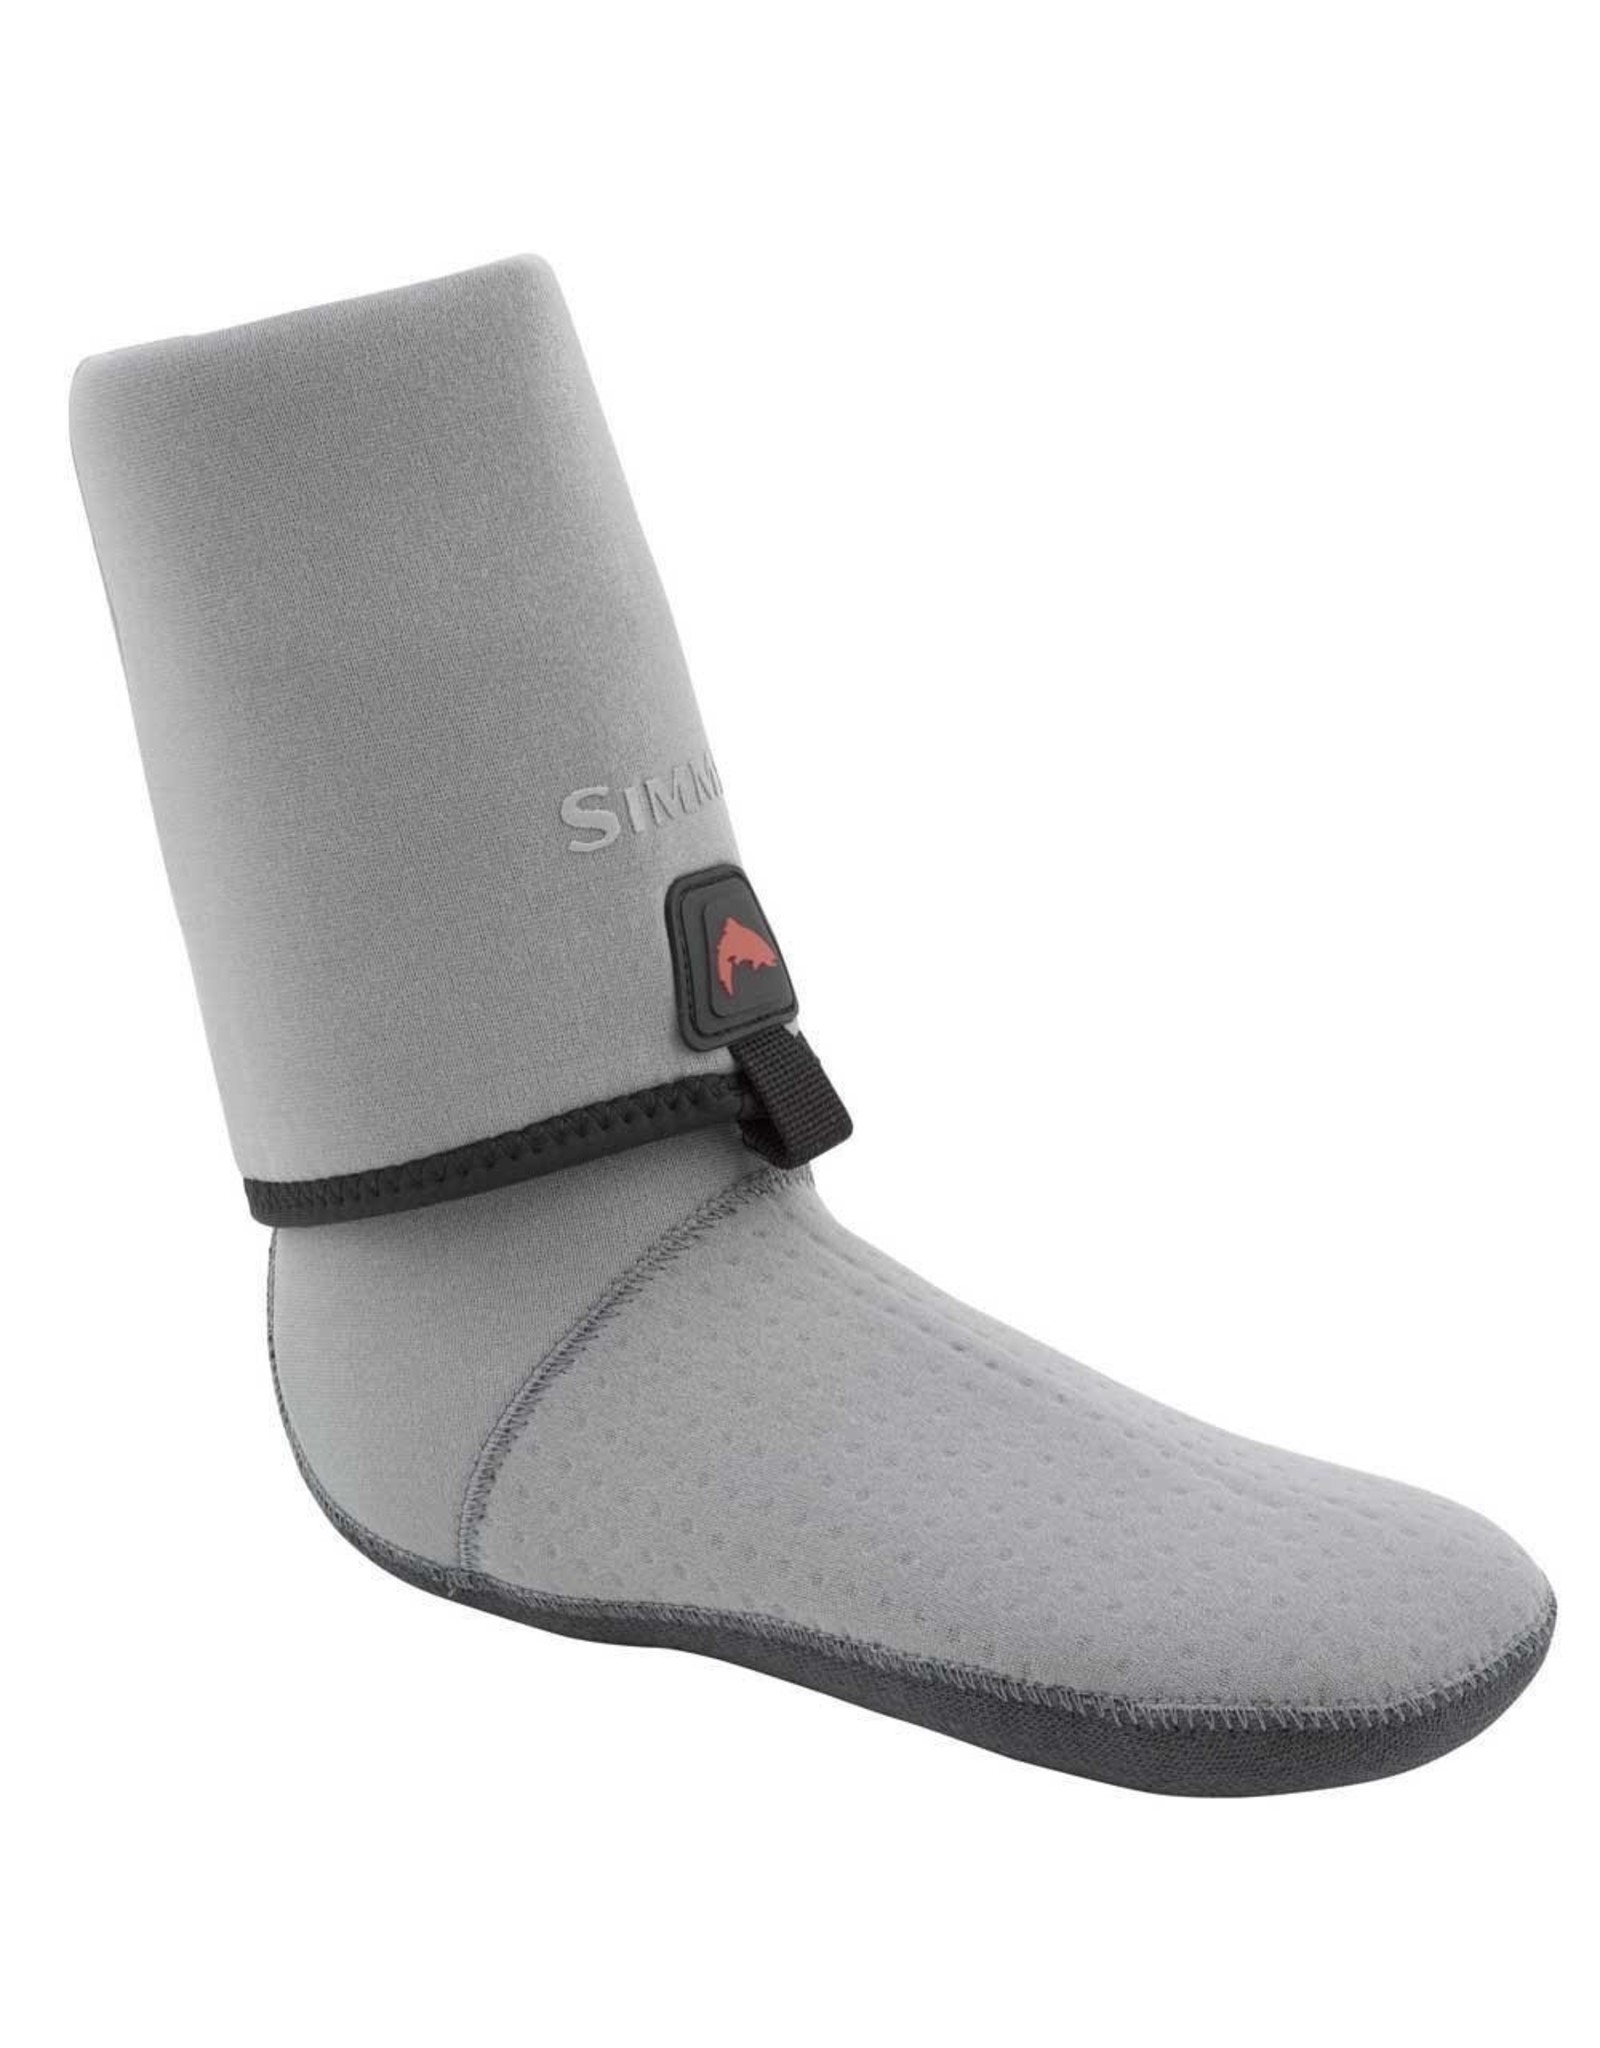 SIMMS SIMMS Guide Guard Socks - Men's